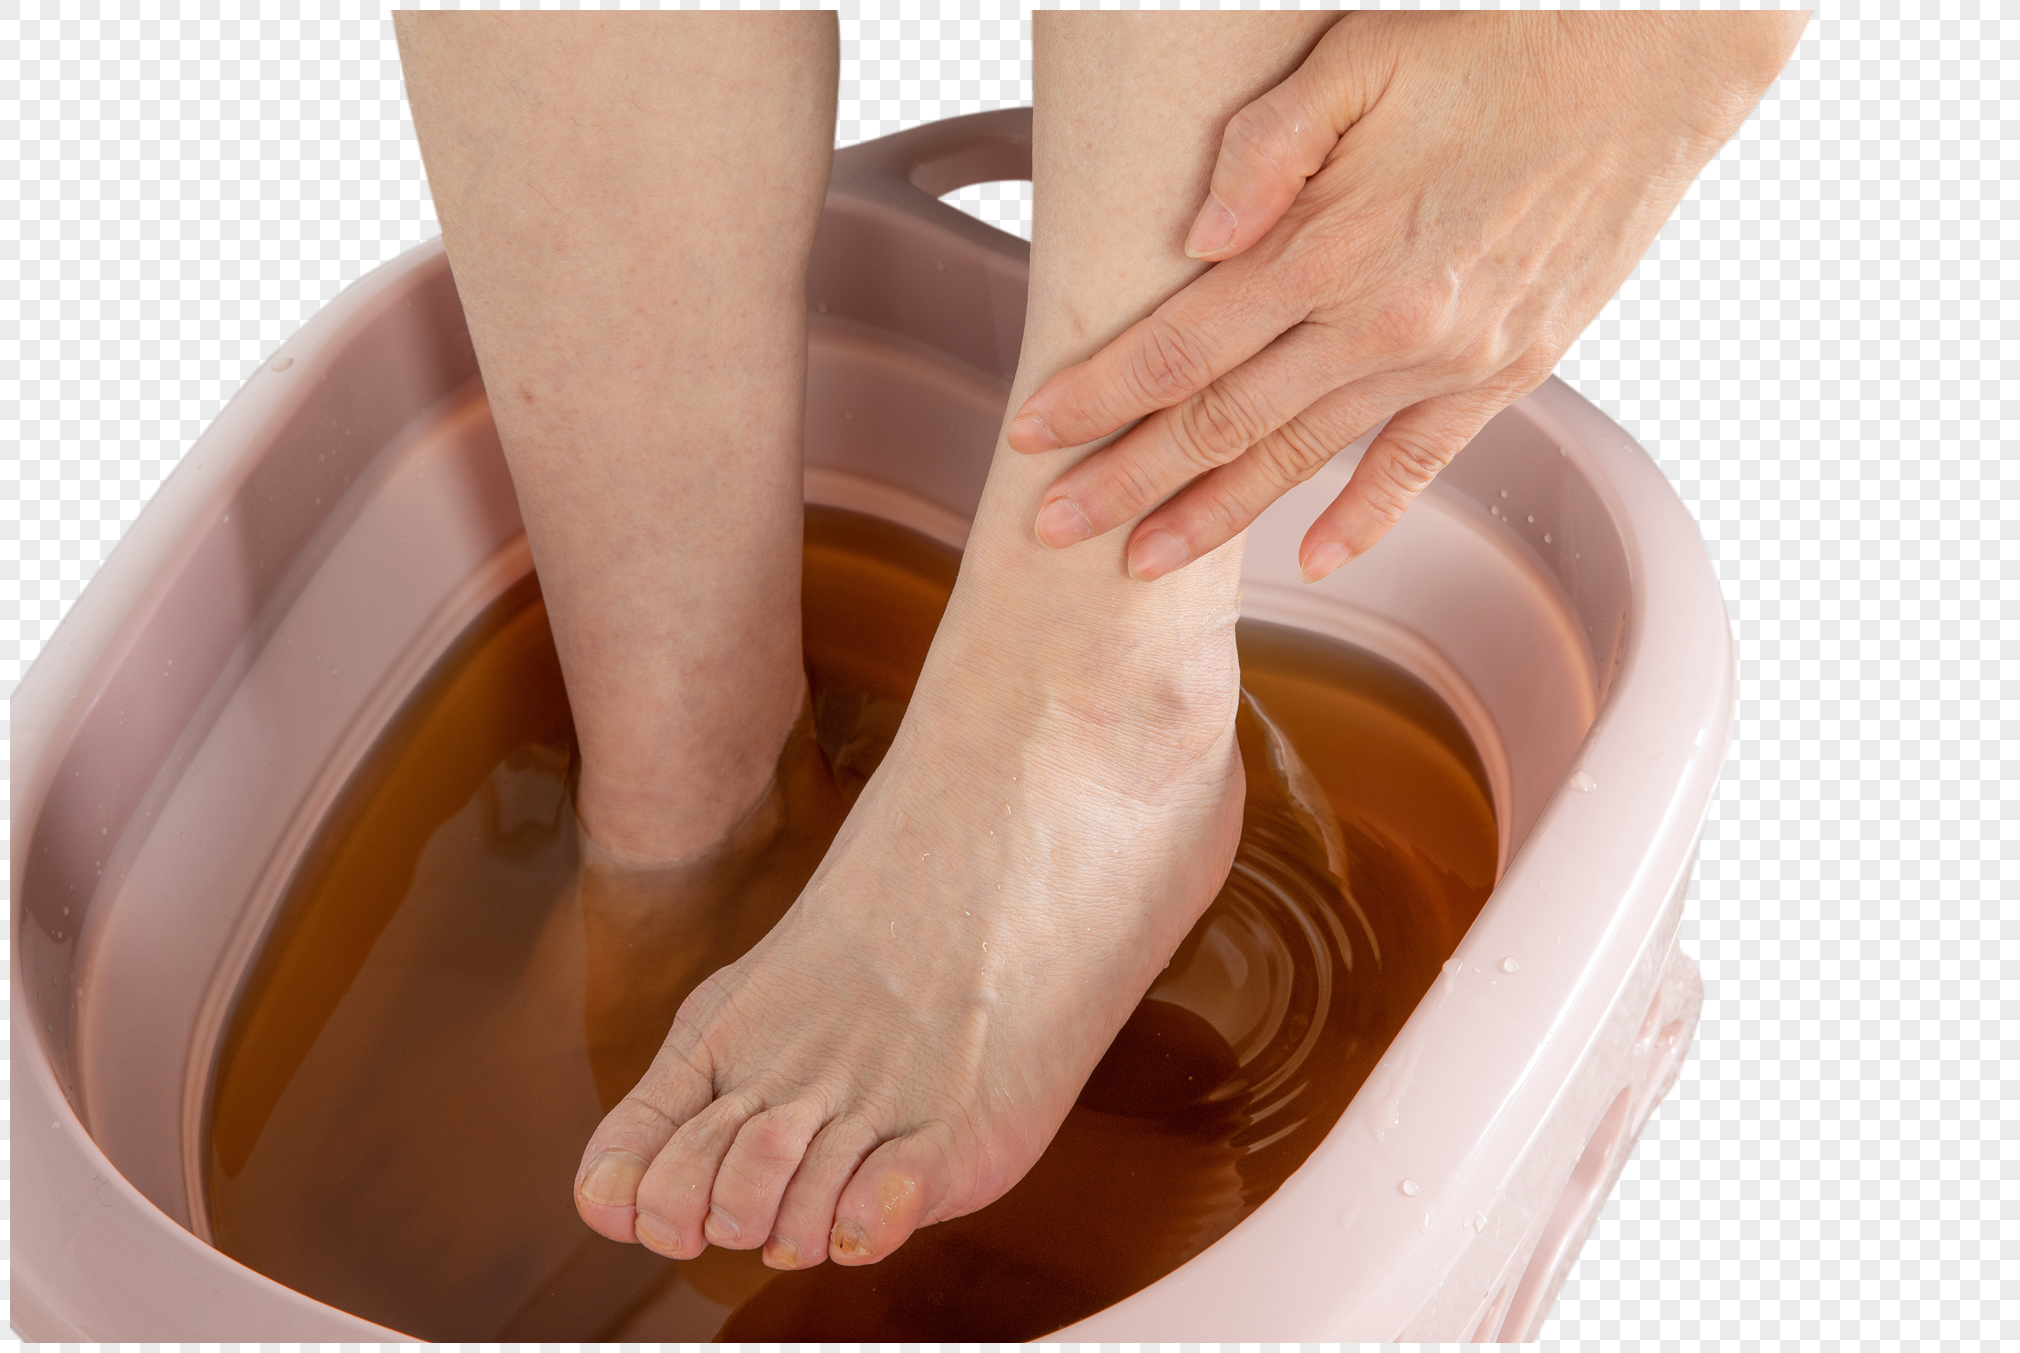 Sự thoải mái và sạch sẽ của đôi chân luôn là một điều quan trọng. Hãy cùng tìm hiểu về rửa chân hàng đầu tại PNG để biết thêm về cách làm sạch và chăm sóc cho đôi chân của bạn.